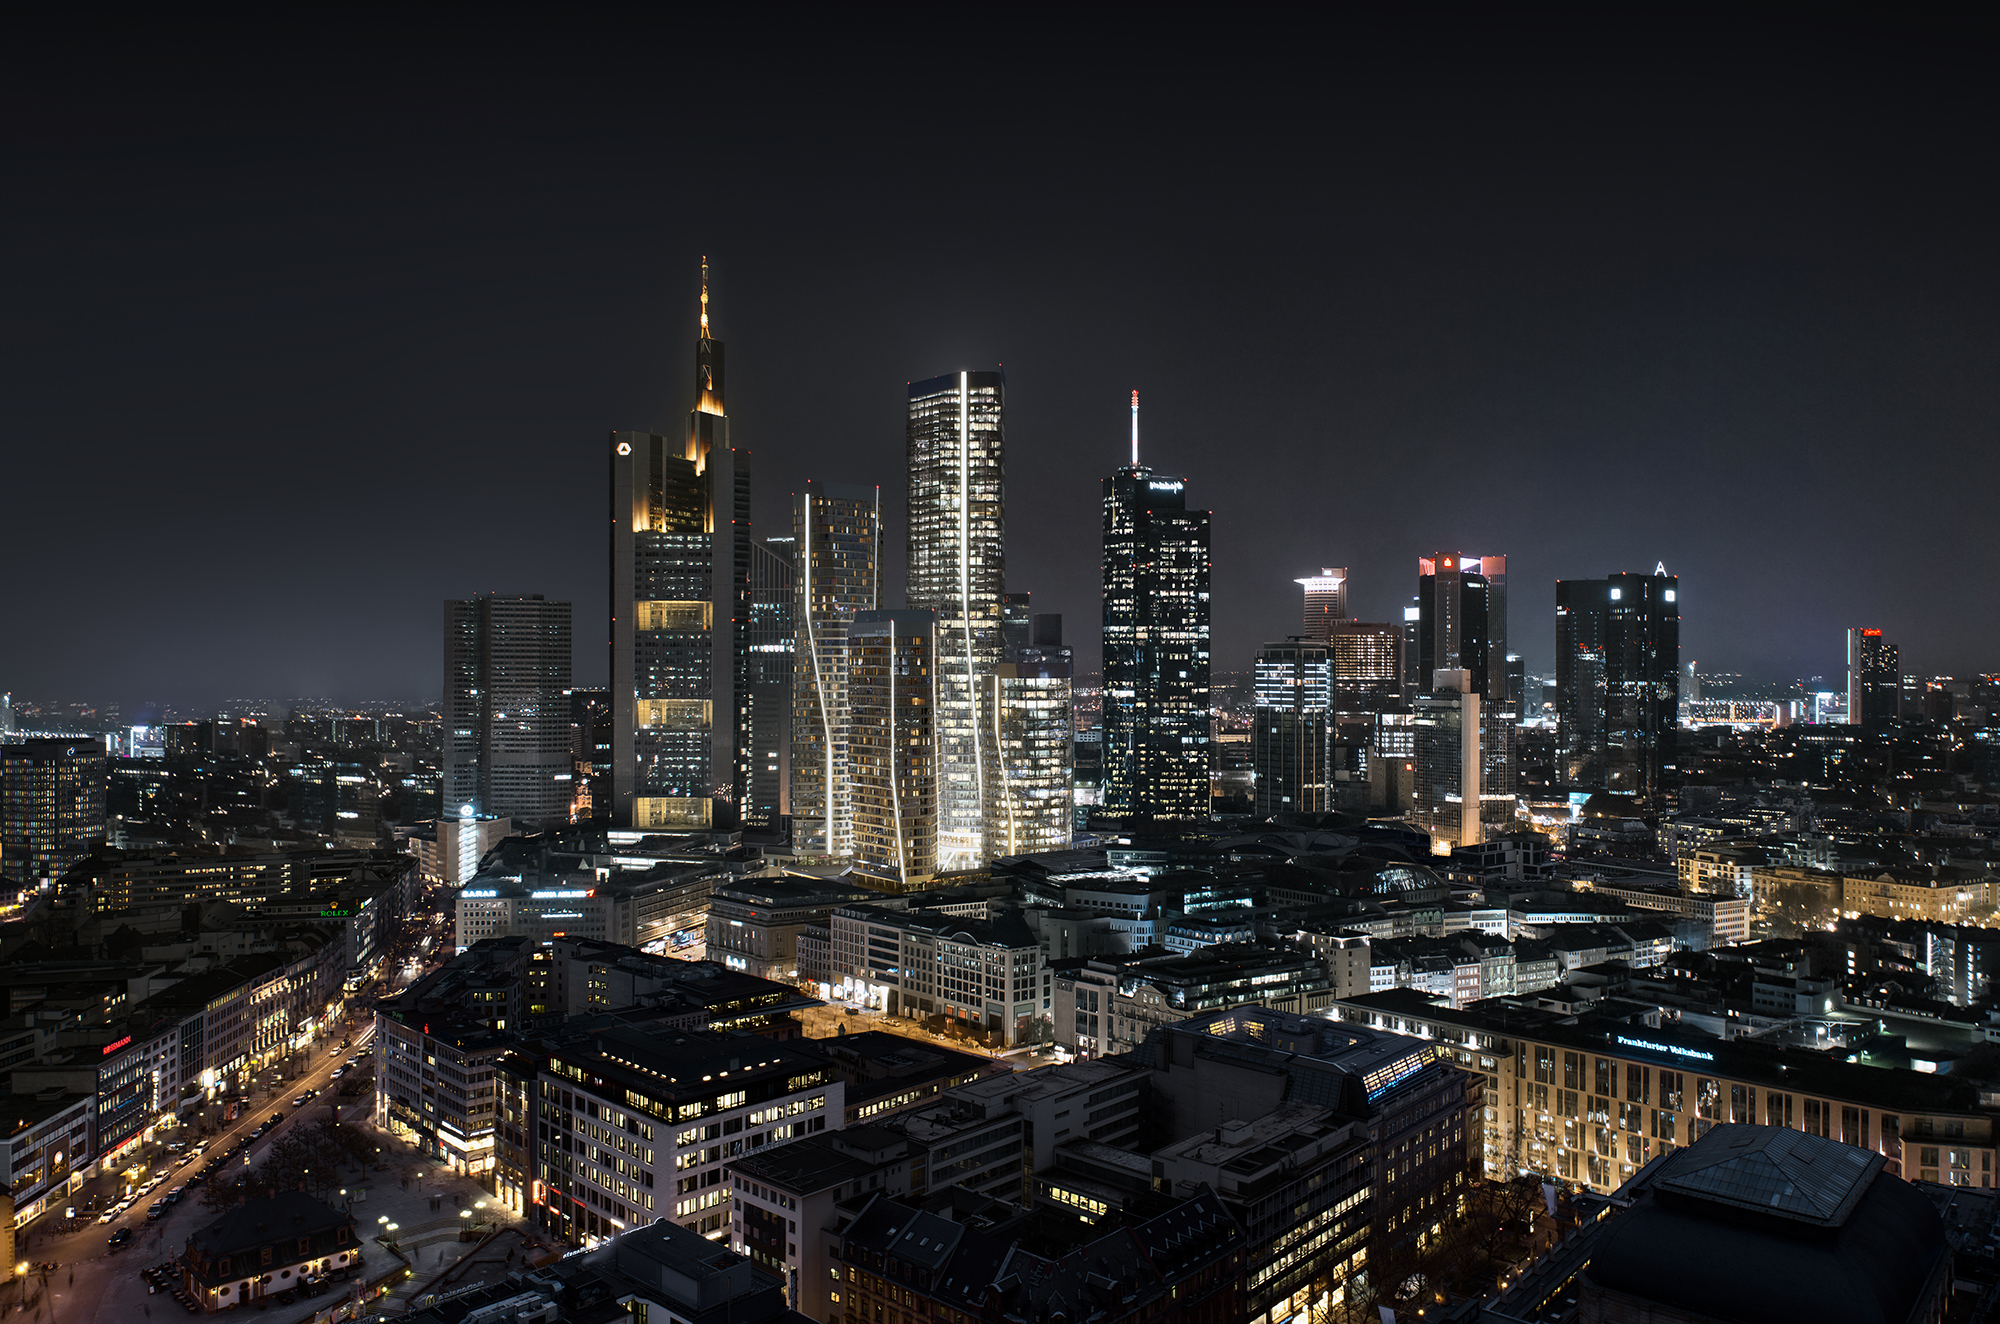 Die subtilen Knicke und Verschiebungen in den einzelnen Gebäuden sind ein prägendes Element von Four Frankfurt.